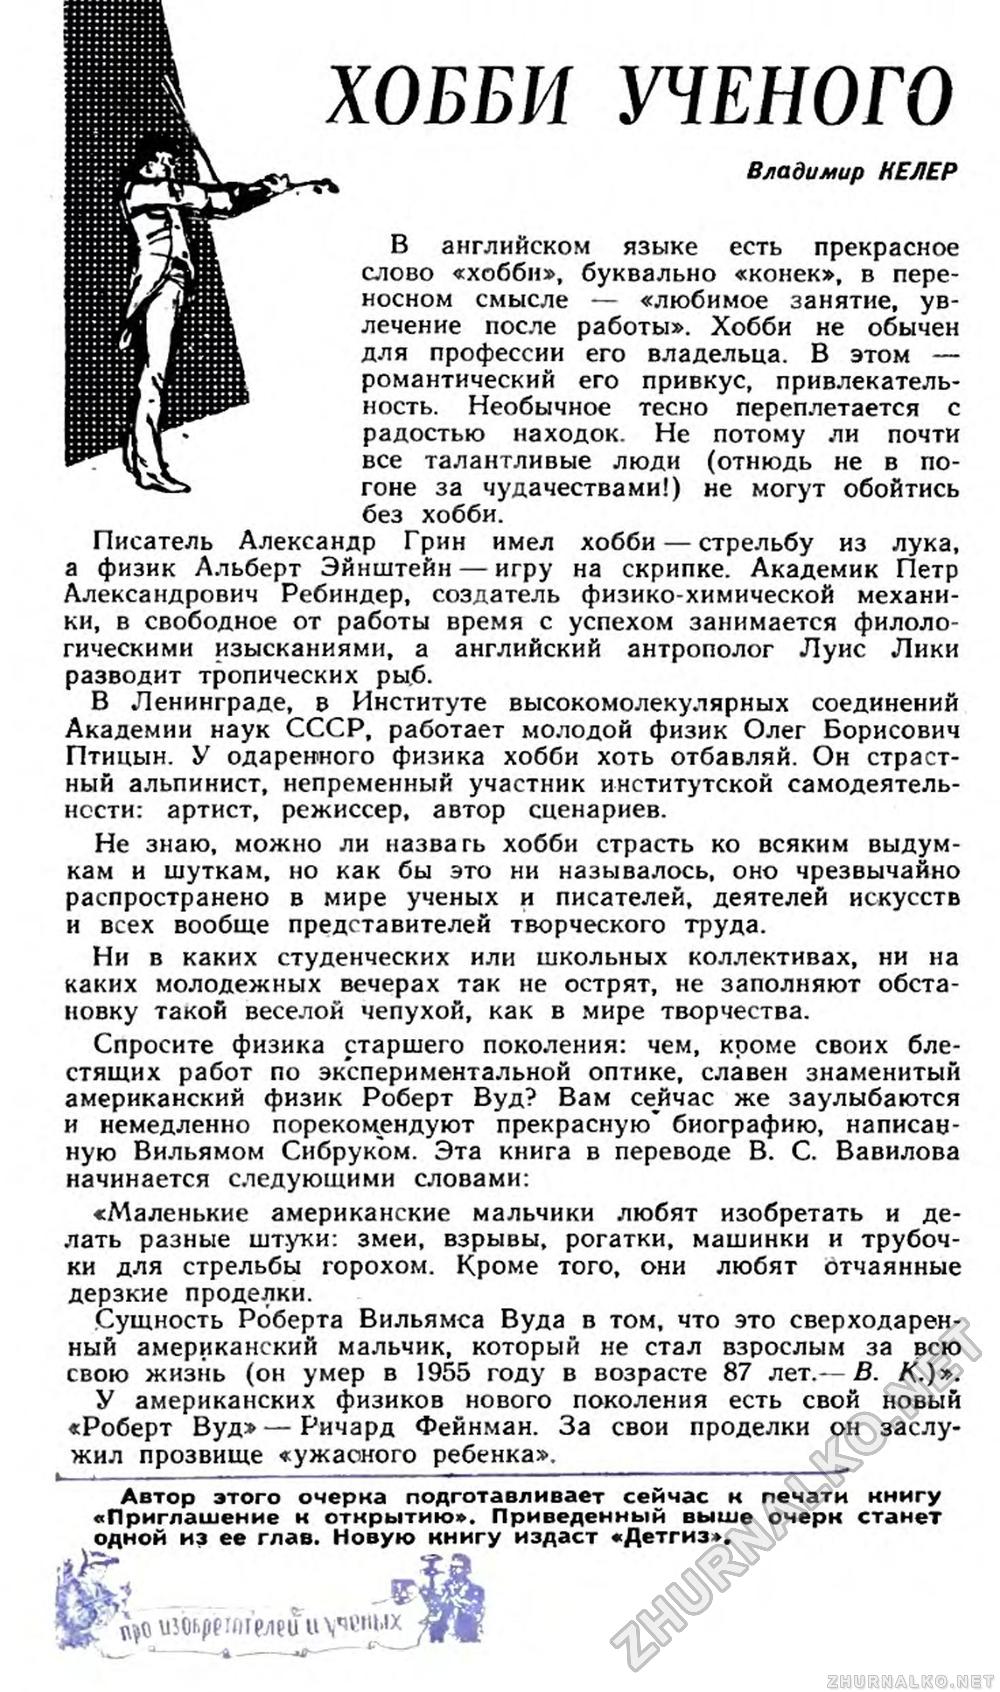 ХОББИ УЧЕНОГО - Юный техник 1963-07, страница 58